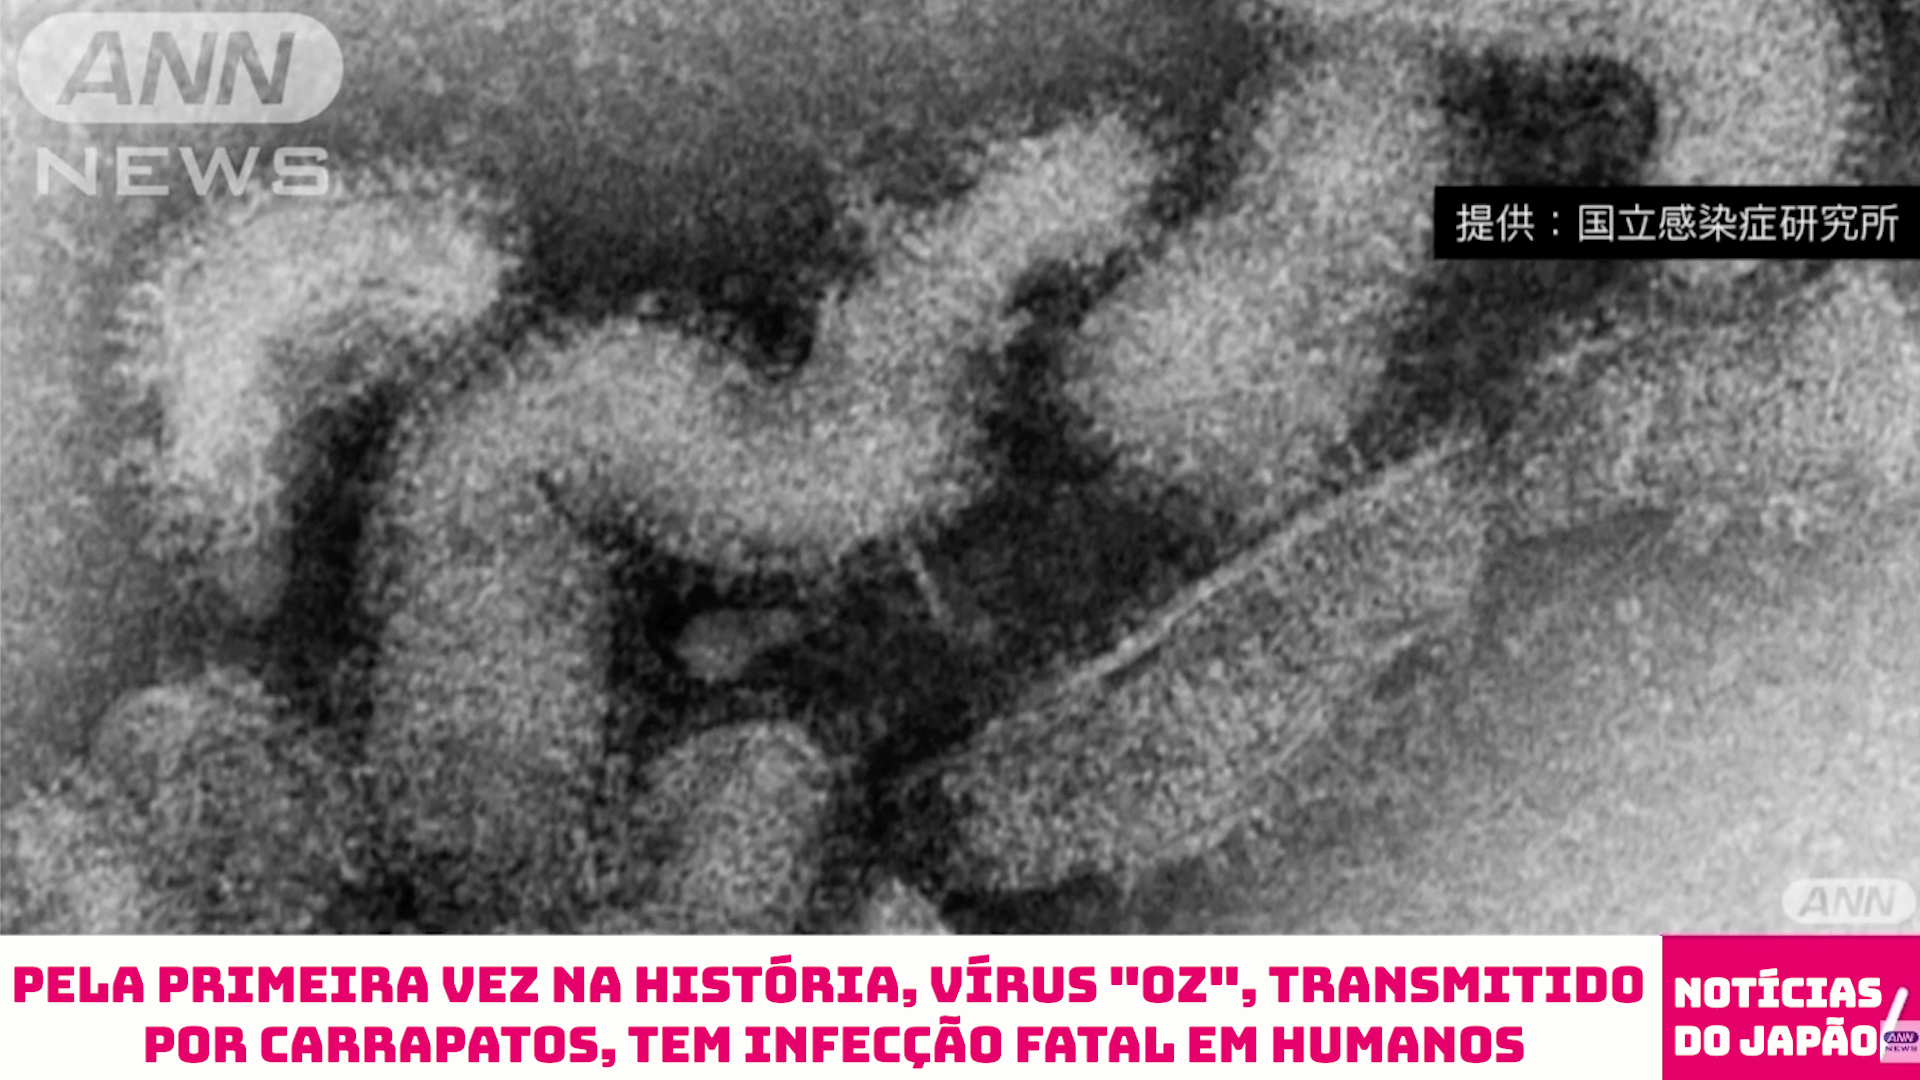 Pela primeira vez na história, vírus “Oz”, transmitido por carrapatos, tem infecção fatal em humanos 